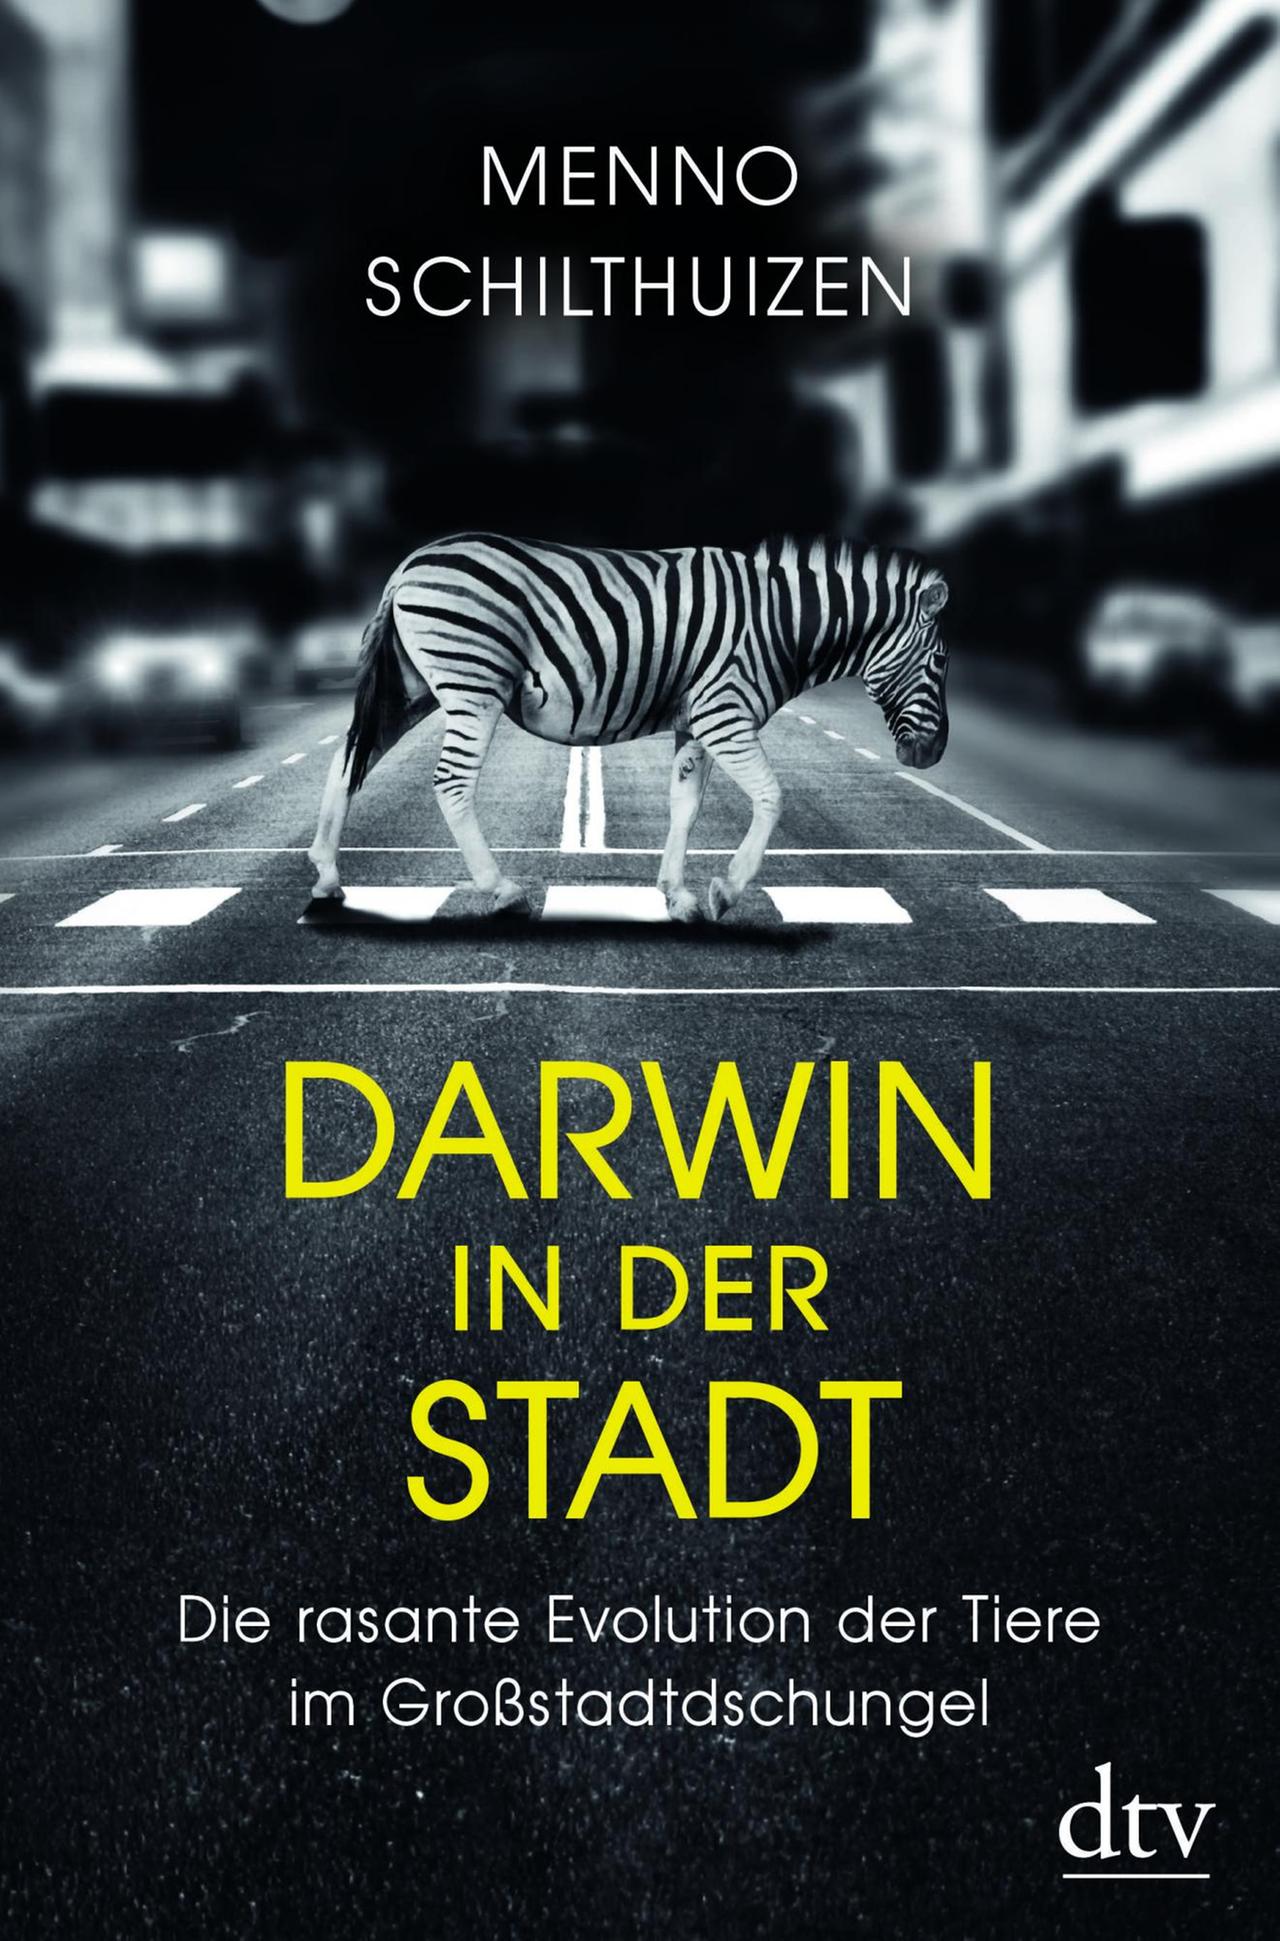 Buchcover Menno Schilthuizen: Darwin in der Stadt - DTV